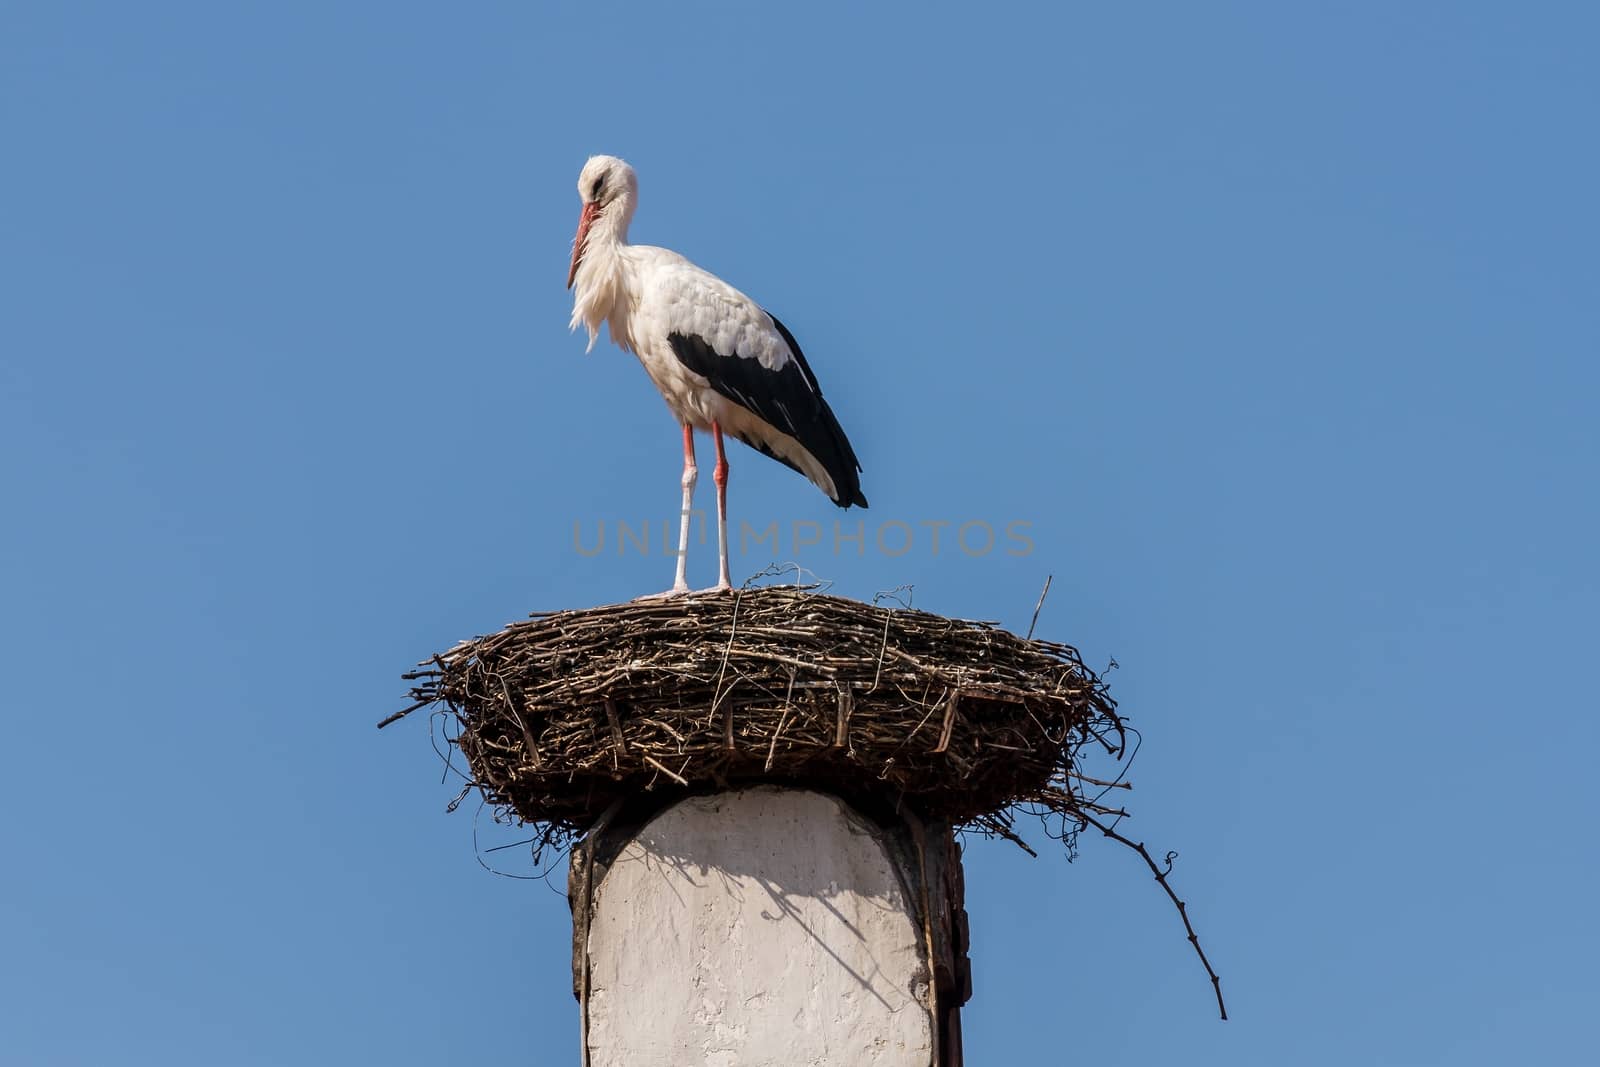 White stork by Digoarpi